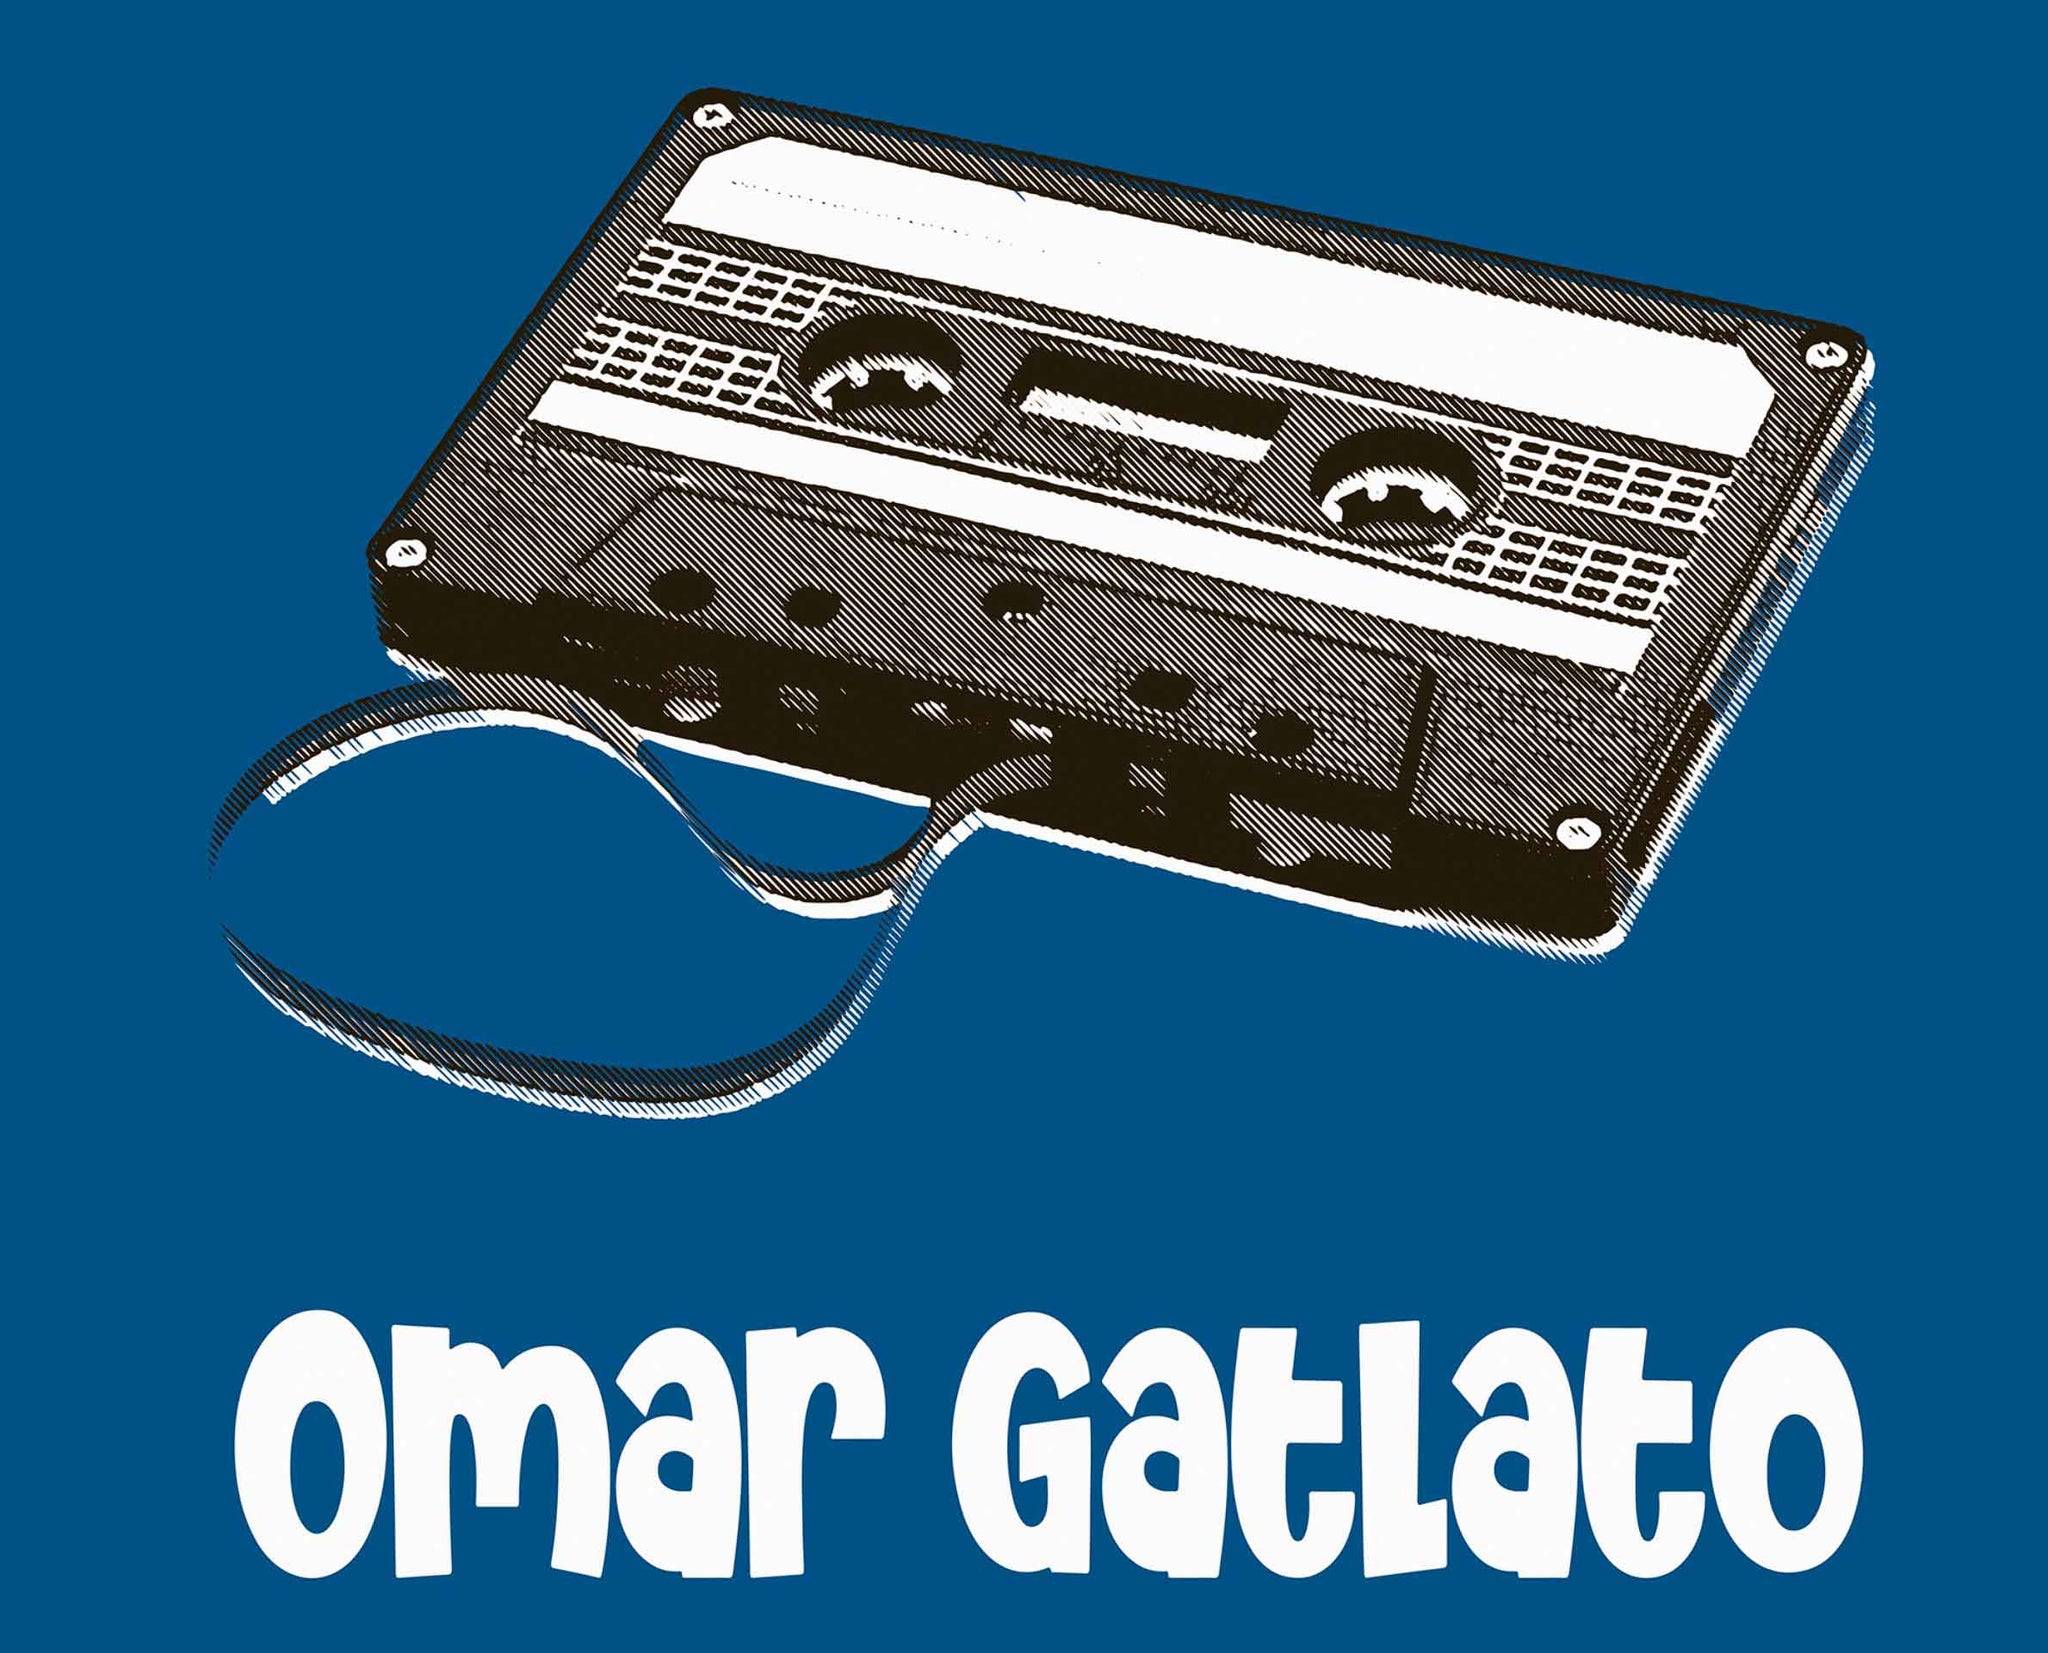 Omar Gatlato - عمر قتلتوا الرجلة